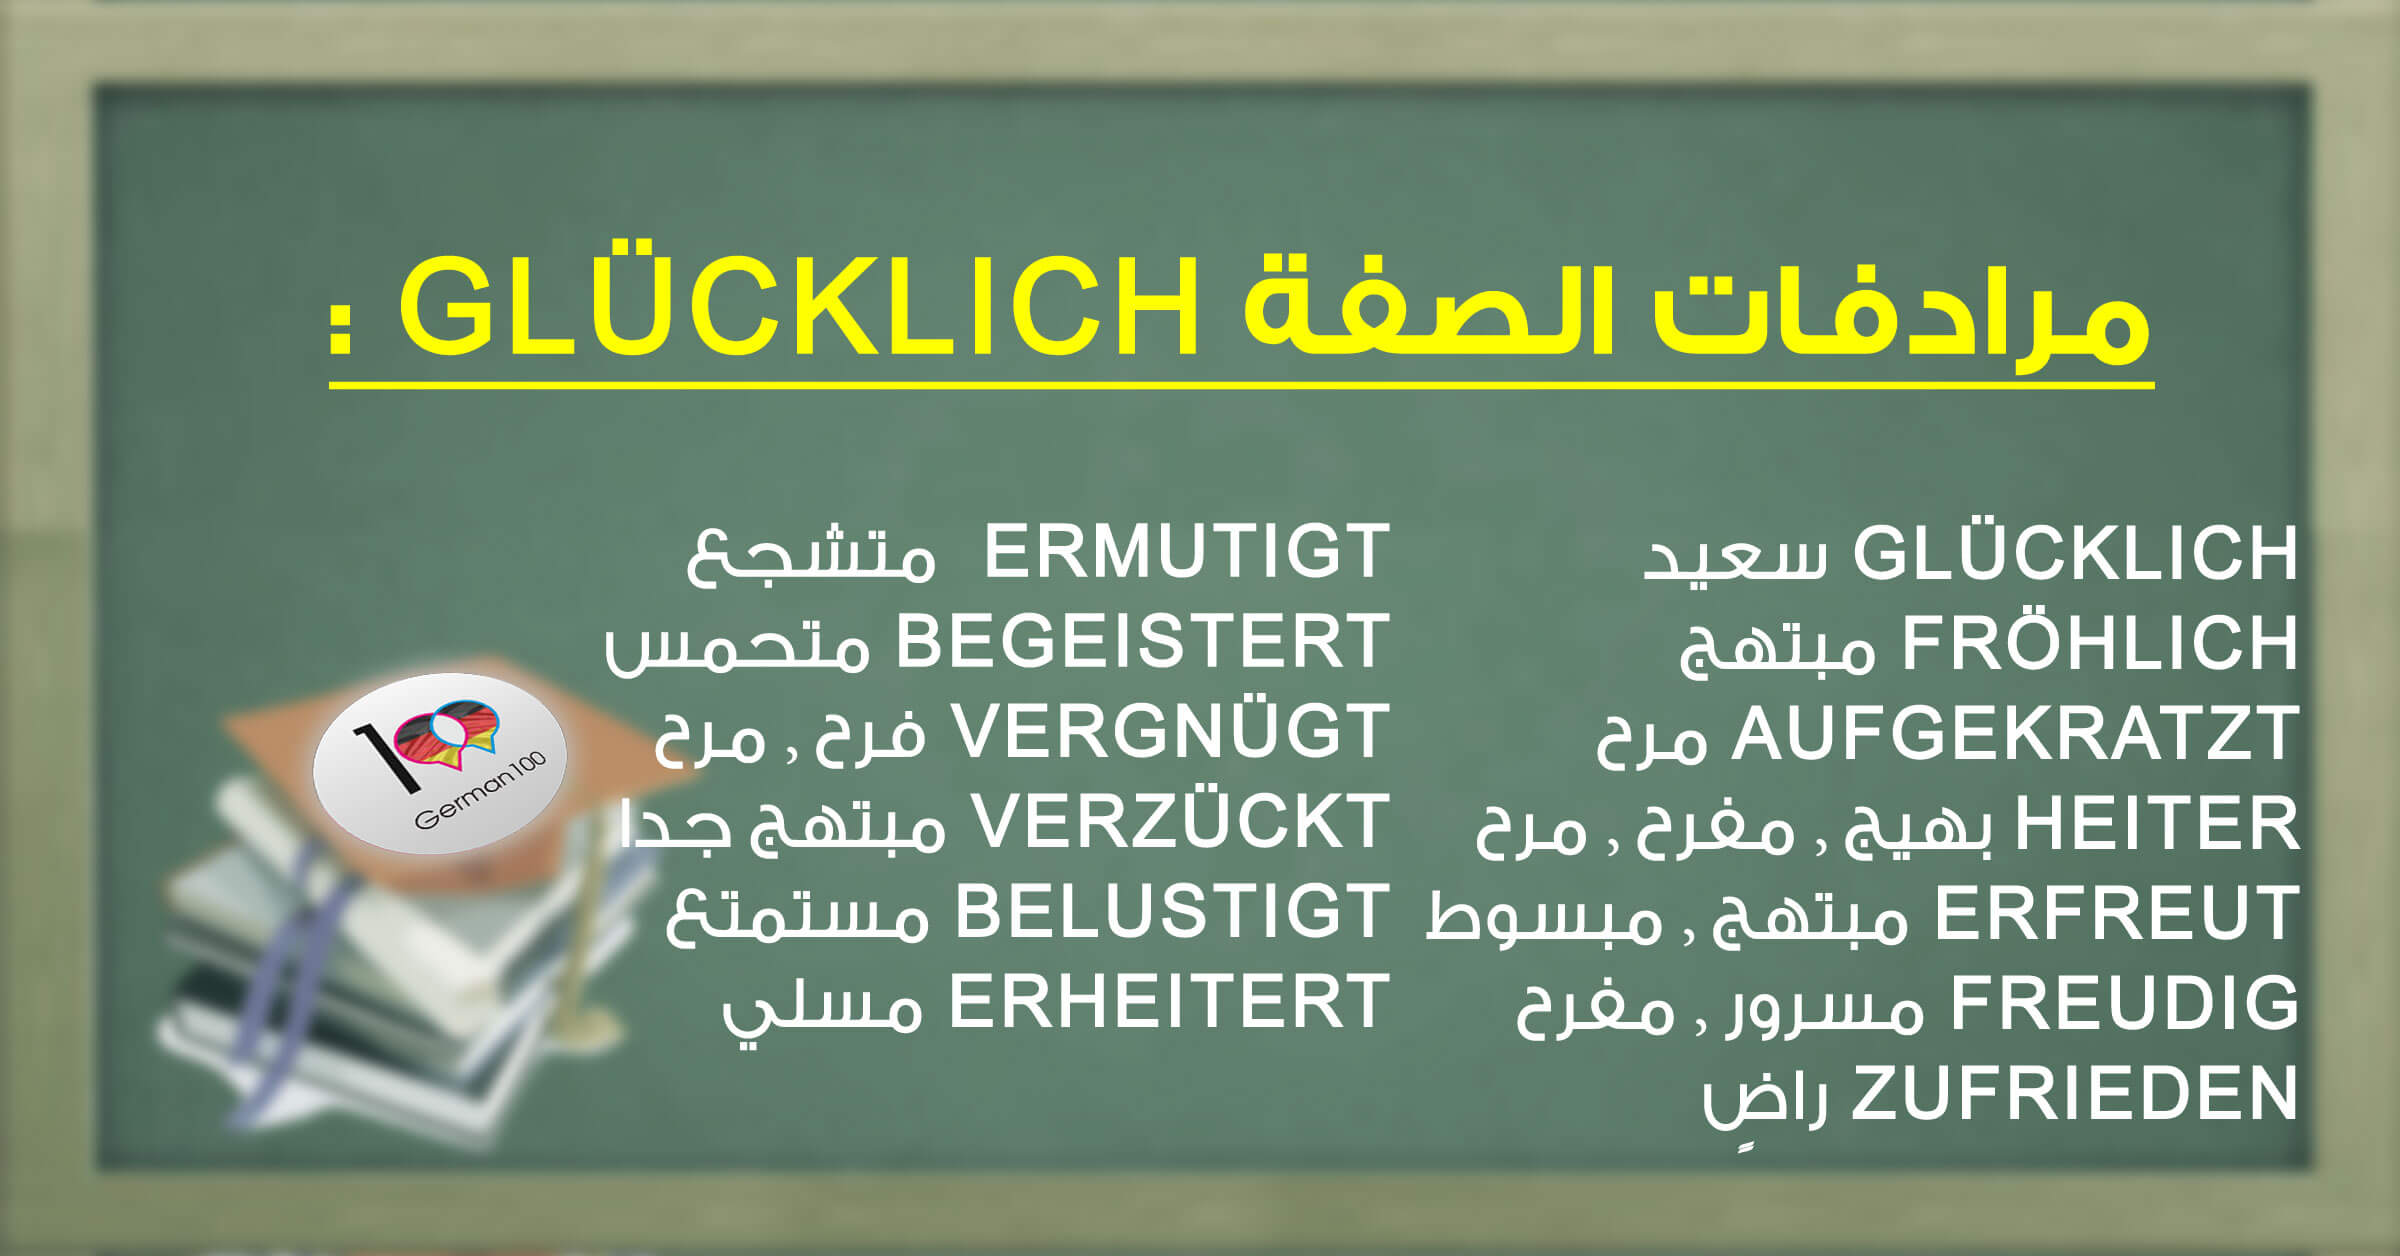 مرادفات الصفة Glücklich - تعلم اللغة الالمانية Glücklich 1 تعلم اللغة الالمانية